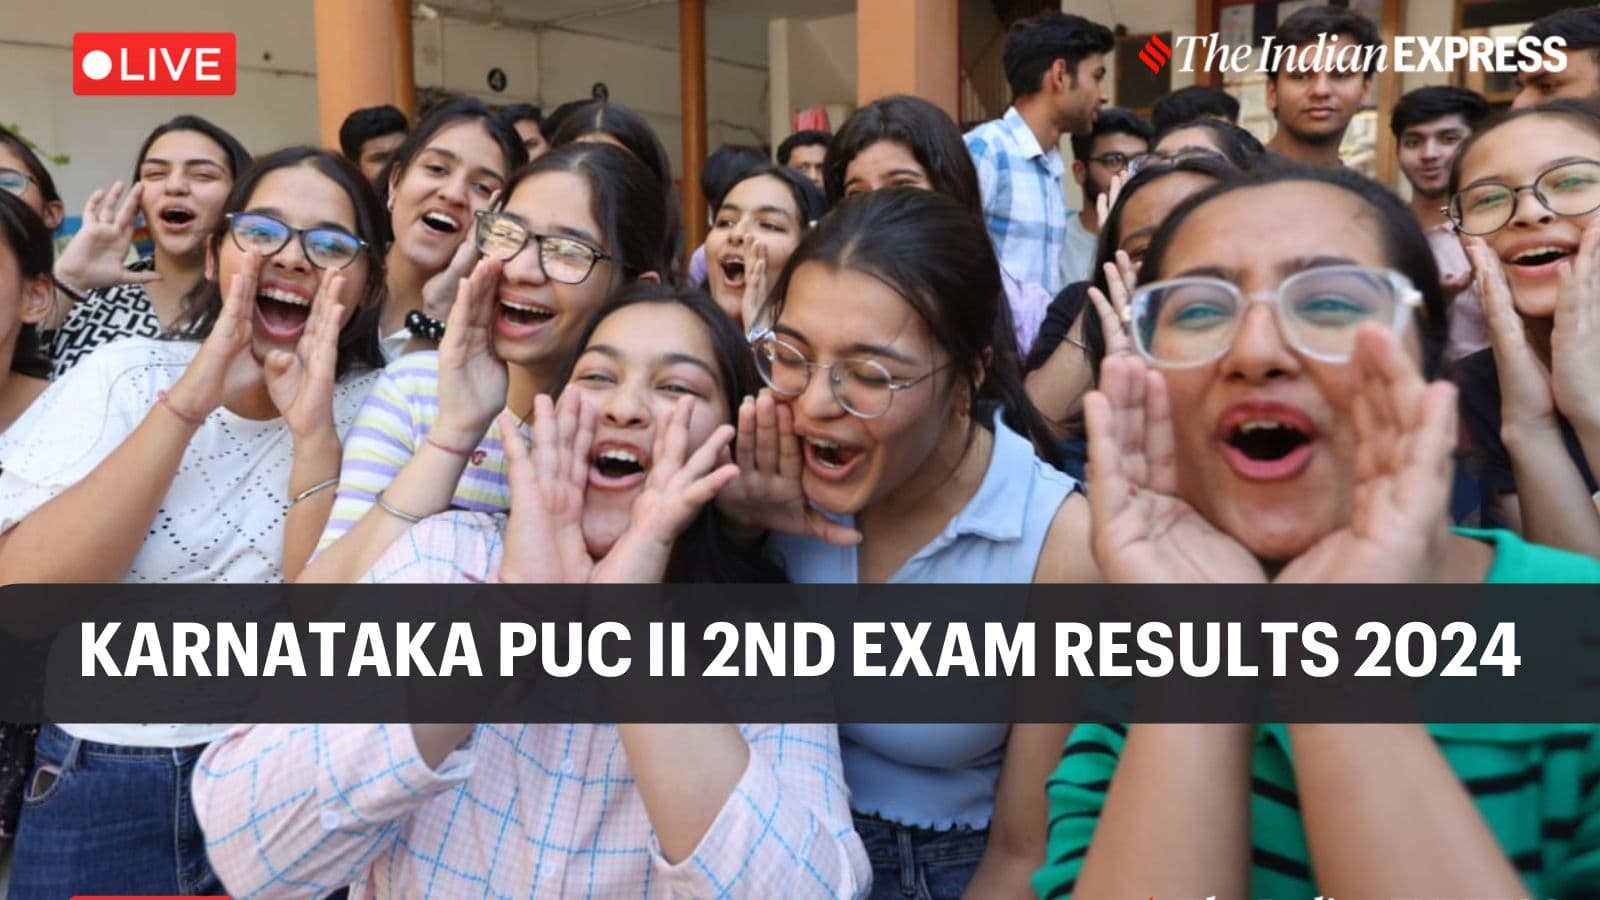 Karnataka 2nd PUC exam 2 results 2024 today at 3 pm